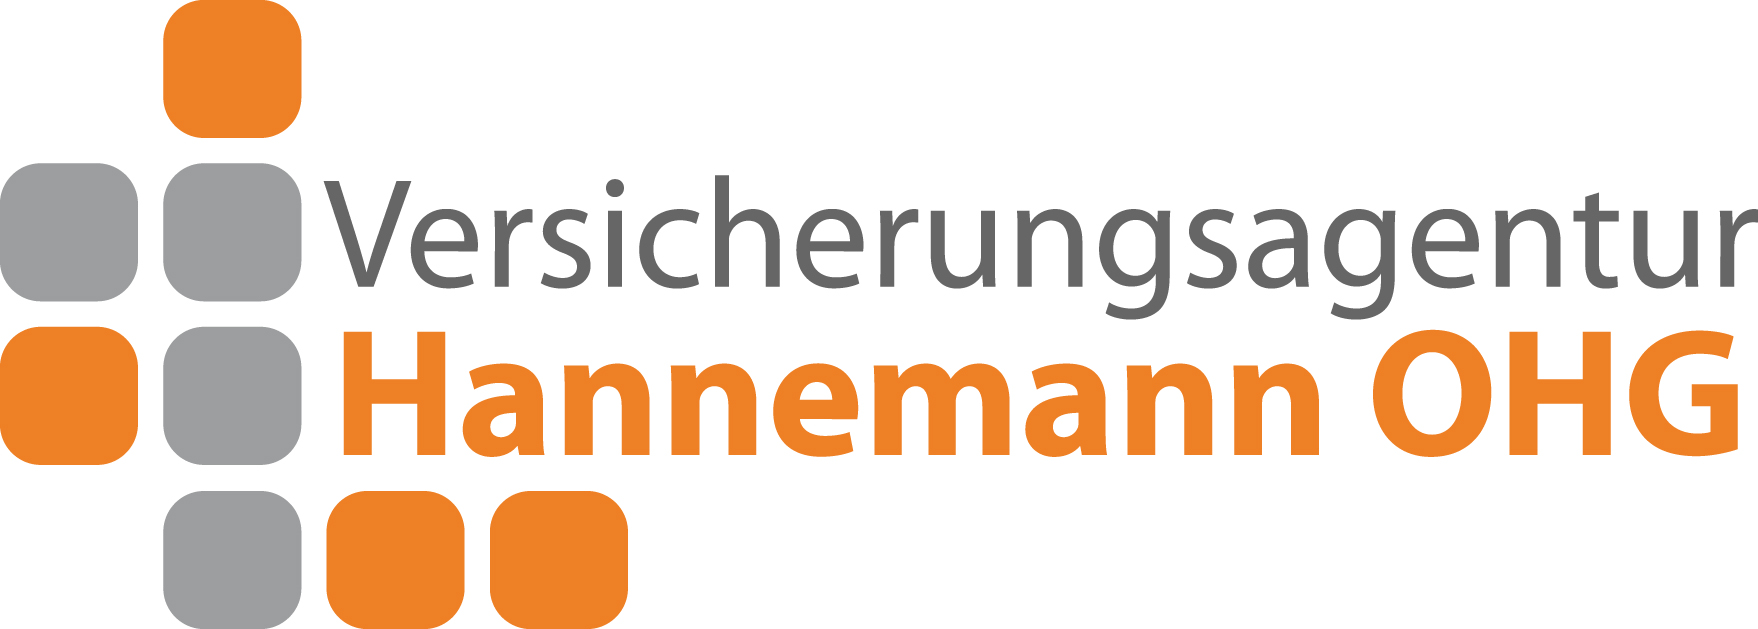 VMFA - Versicherung Hannemann OHG